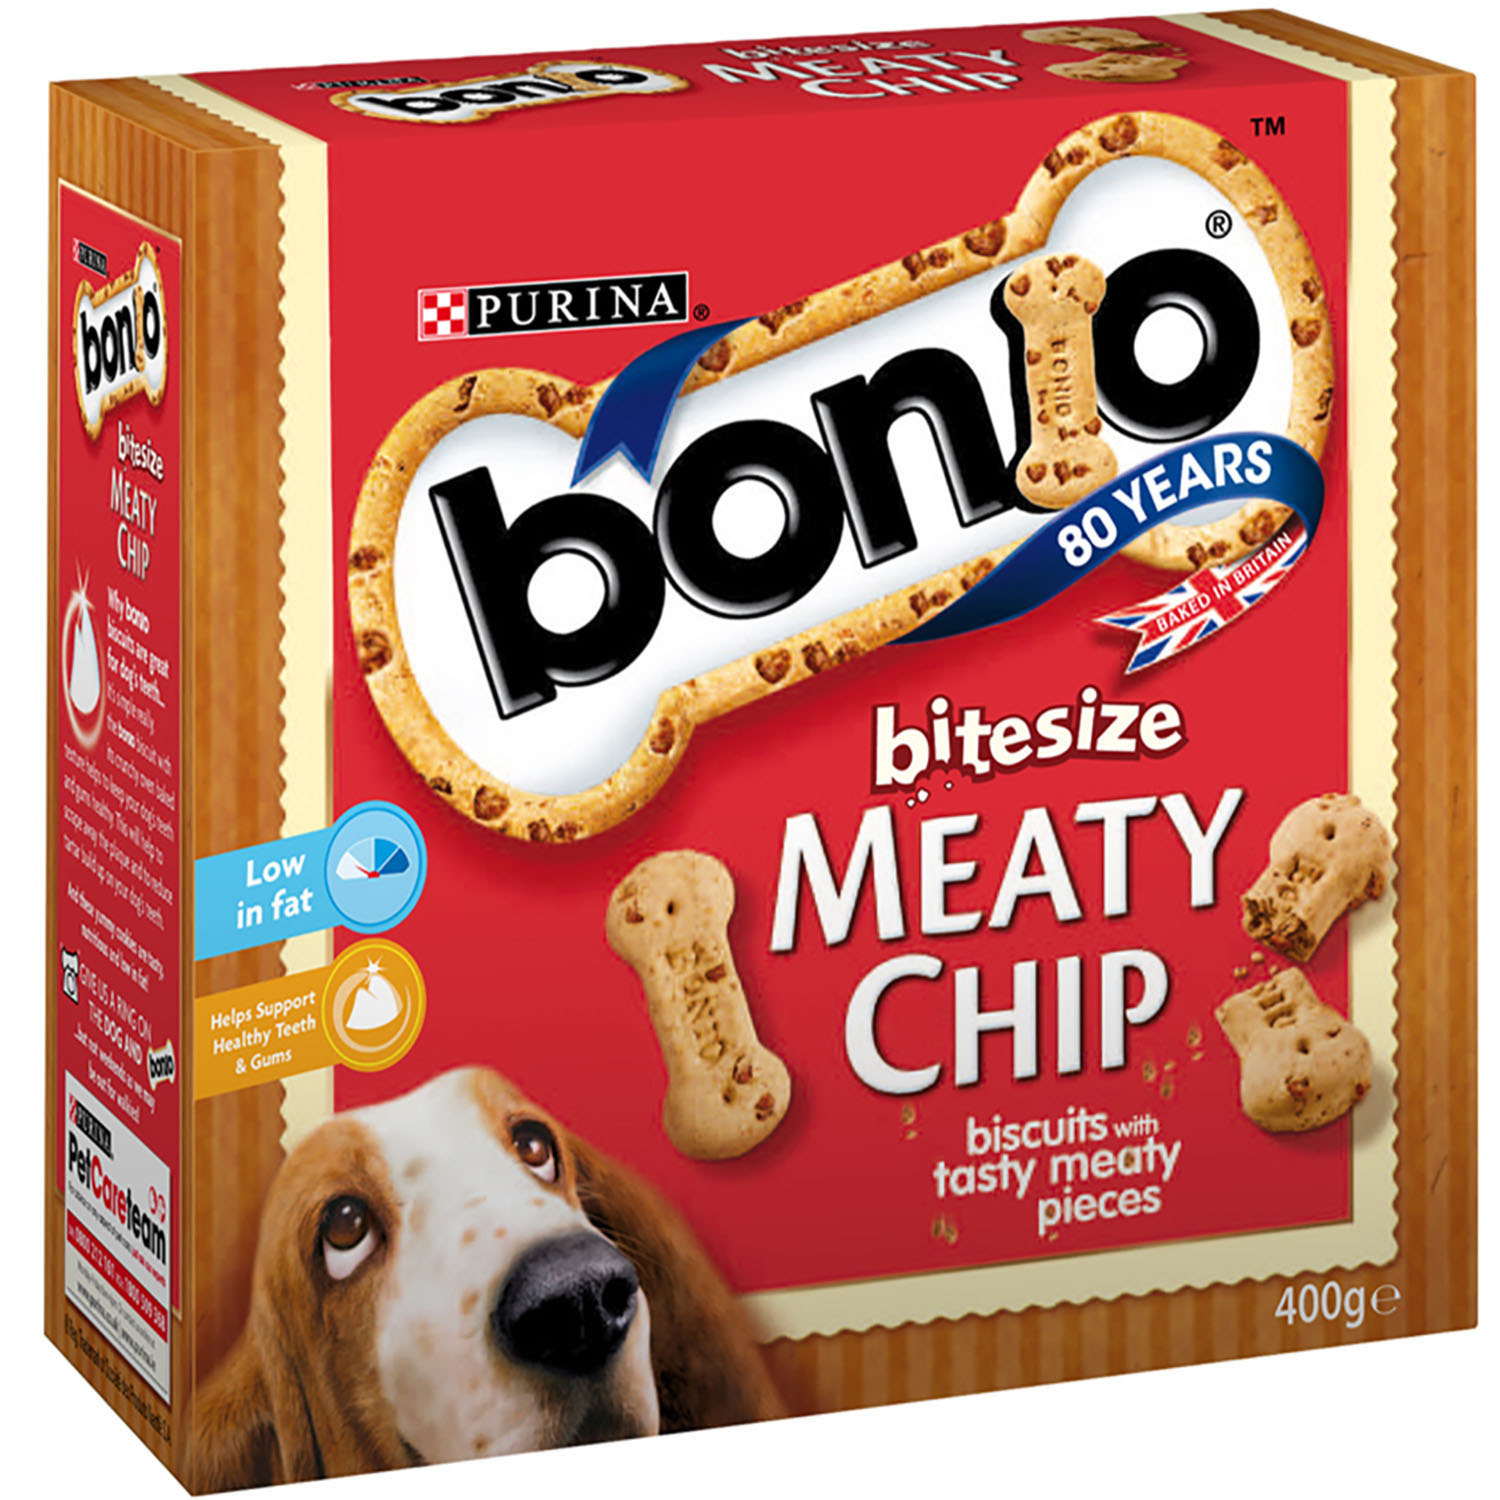 Purina Bonio Meaty Chip Bitesize Dog treat Image